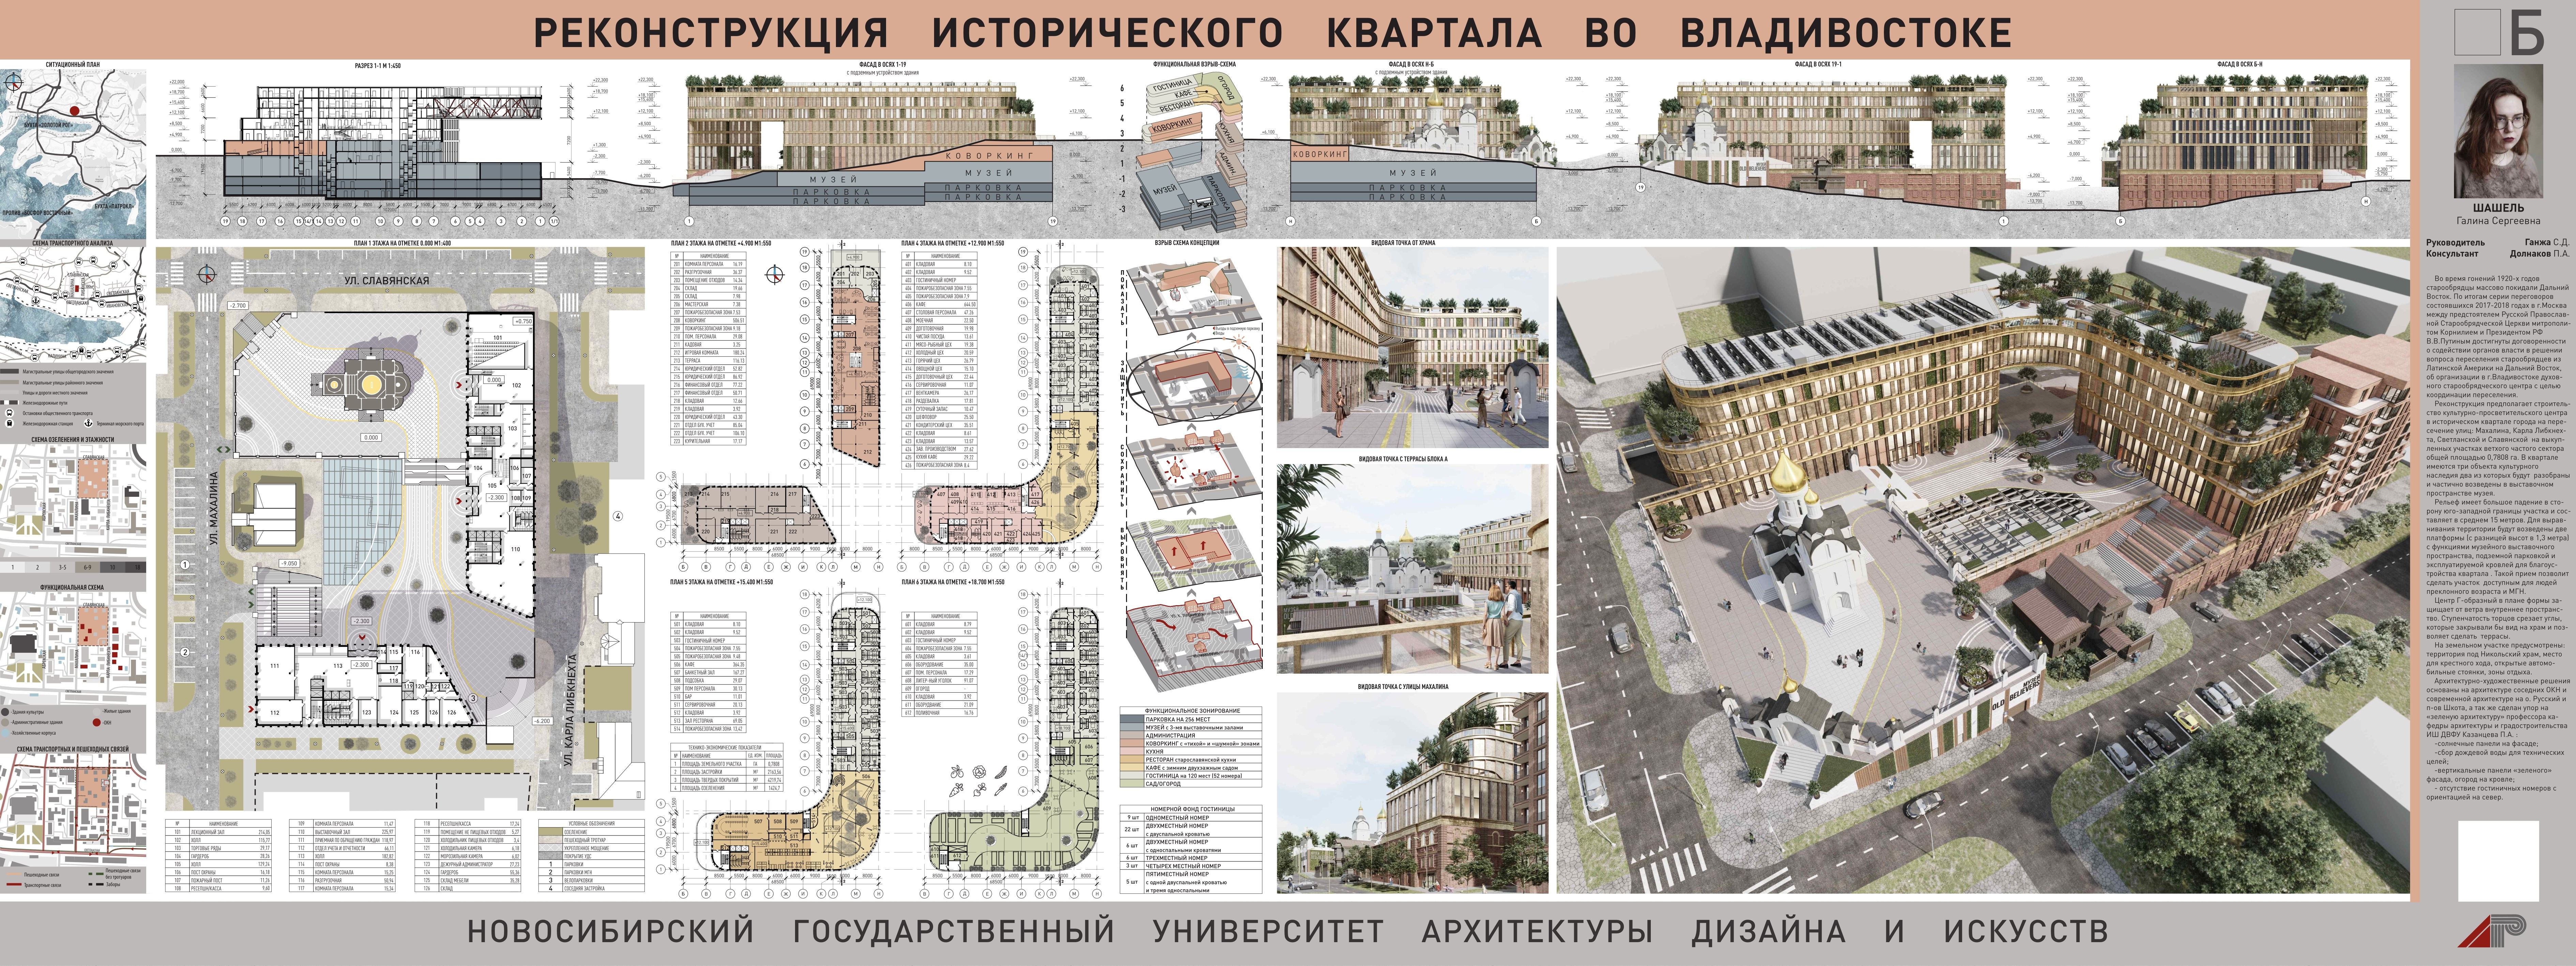 Проект реконструкции исторического квартала